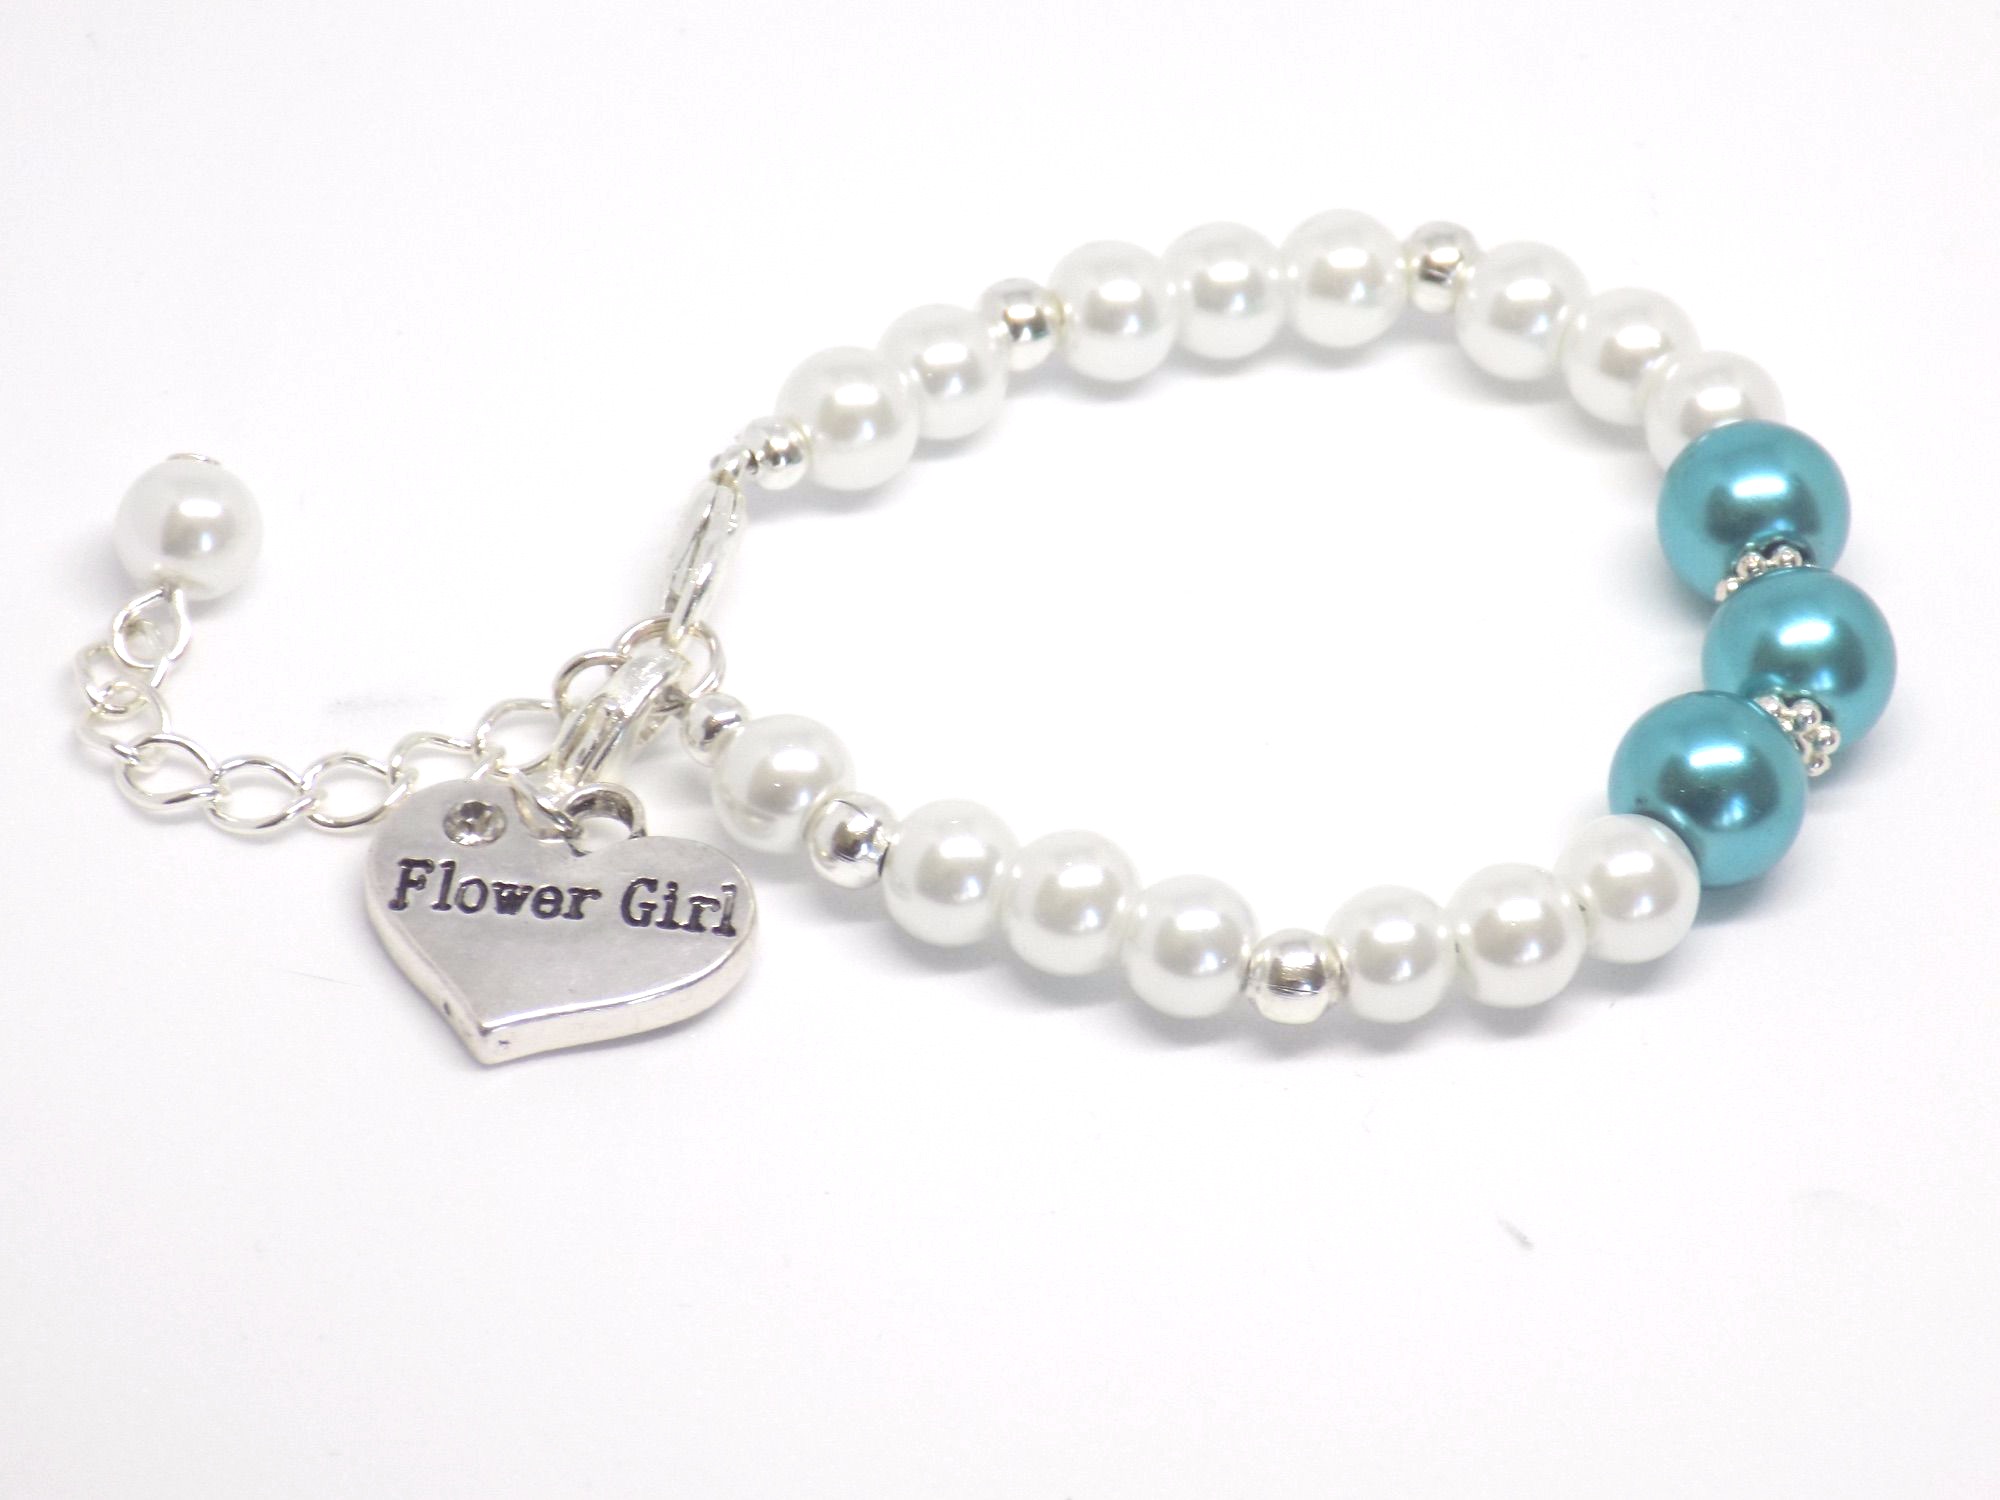 Teal Flower Girl Bracelet